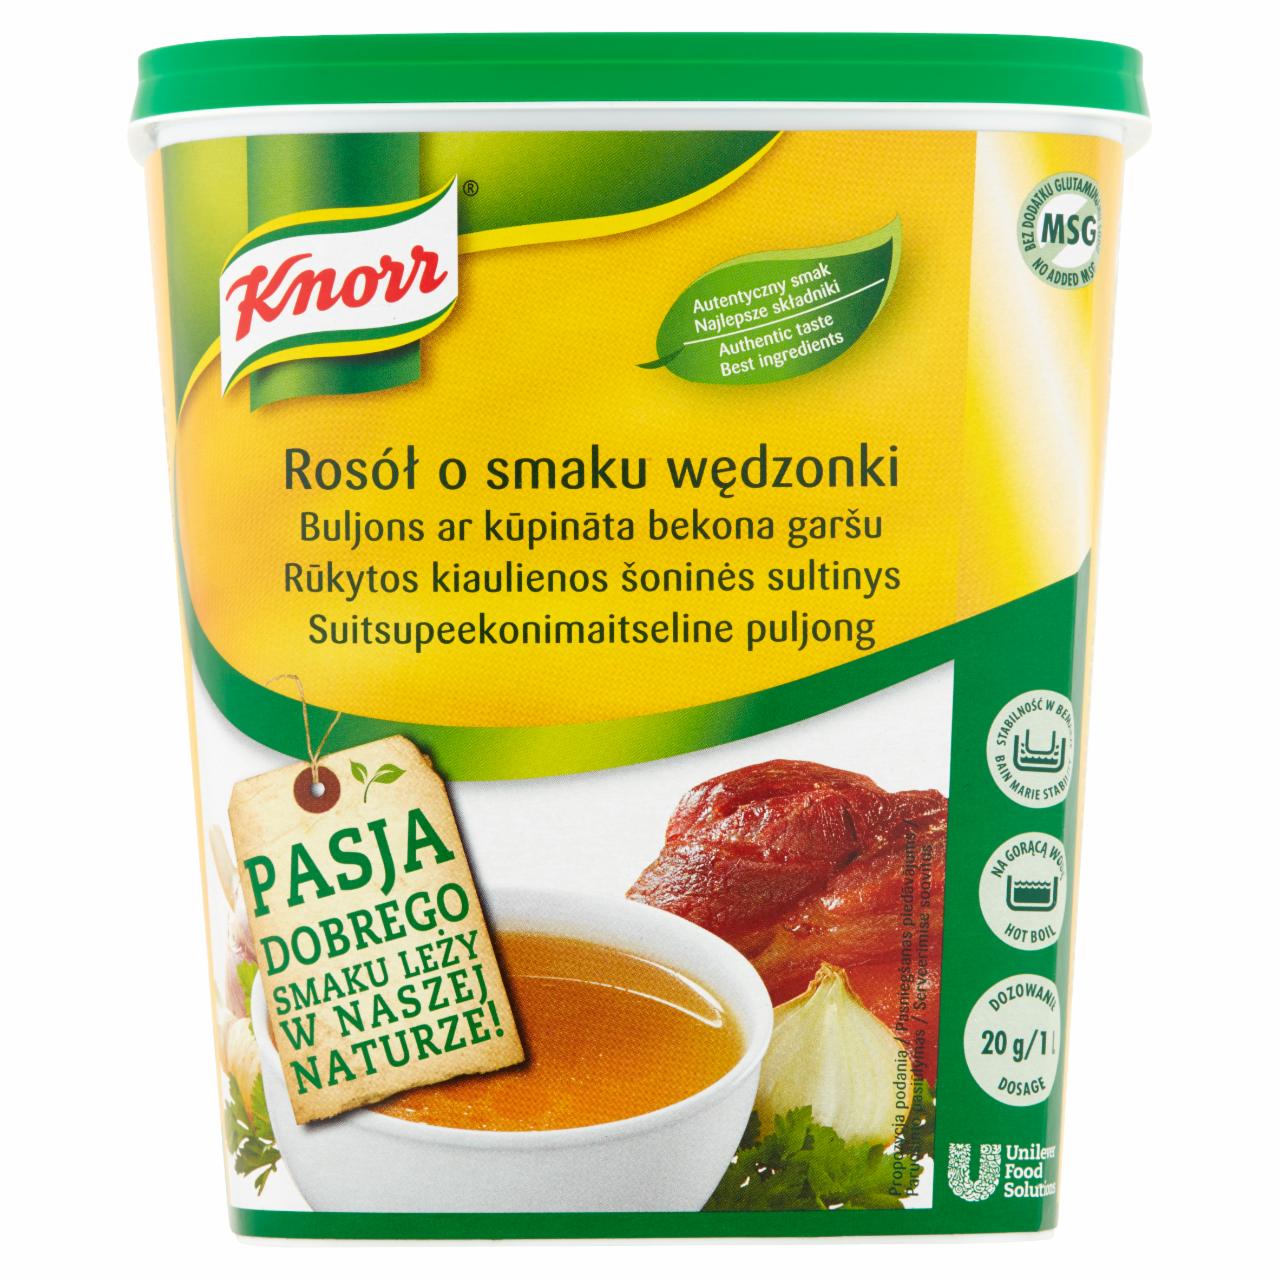 Zdjęcia - Knorr Rosół o smaku wędzonki 1 kg